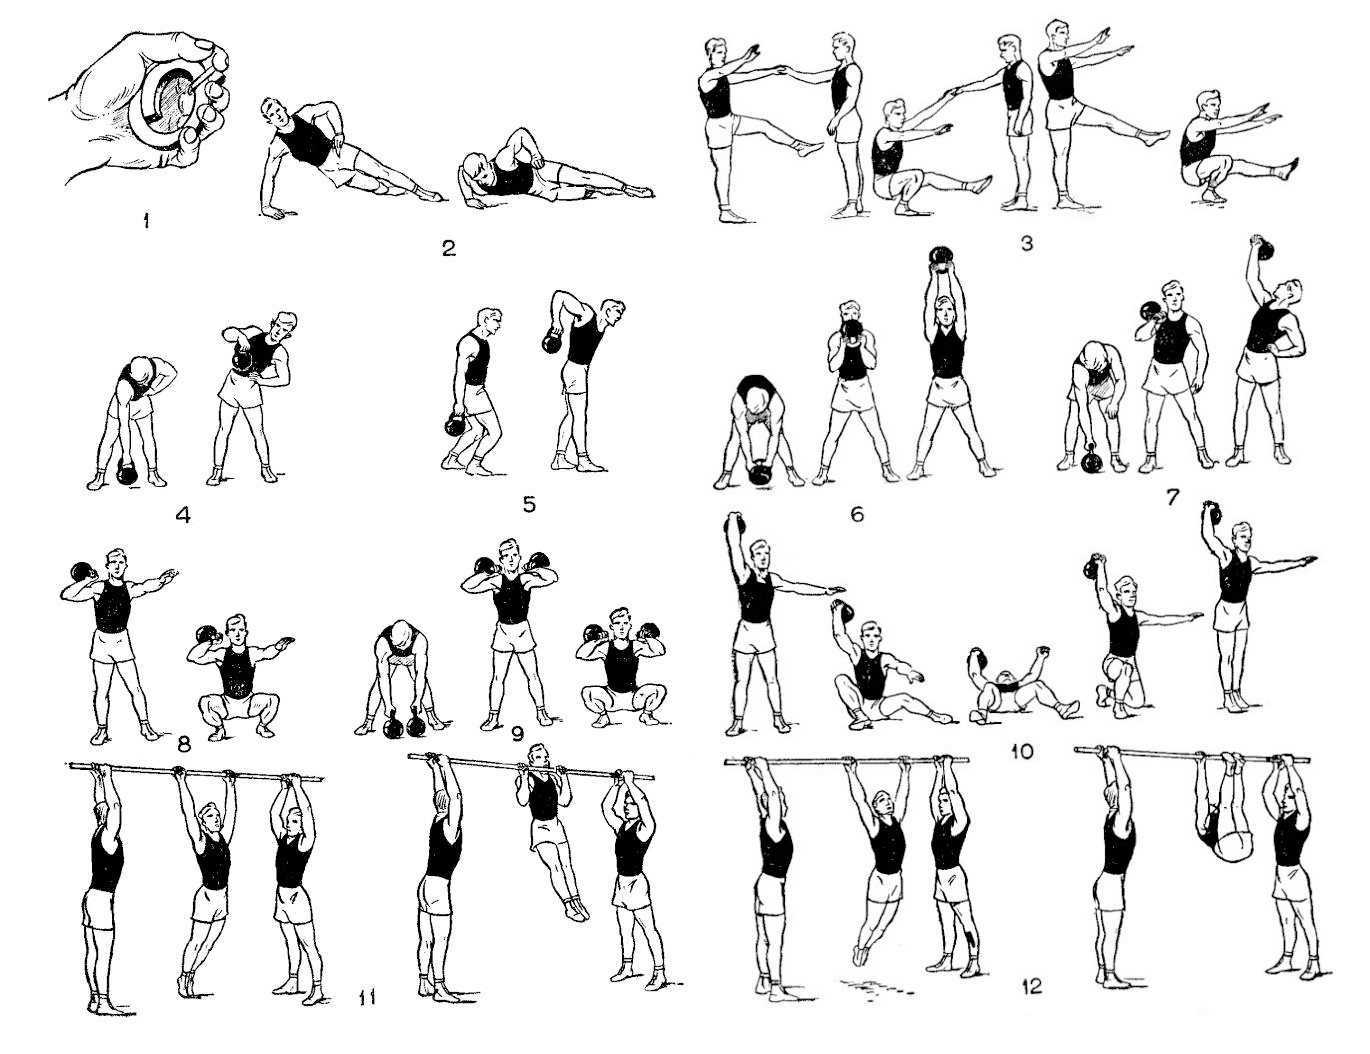 Упражнения для укрепления мышечного "корсета" грудного и шейного отдела позвоночника